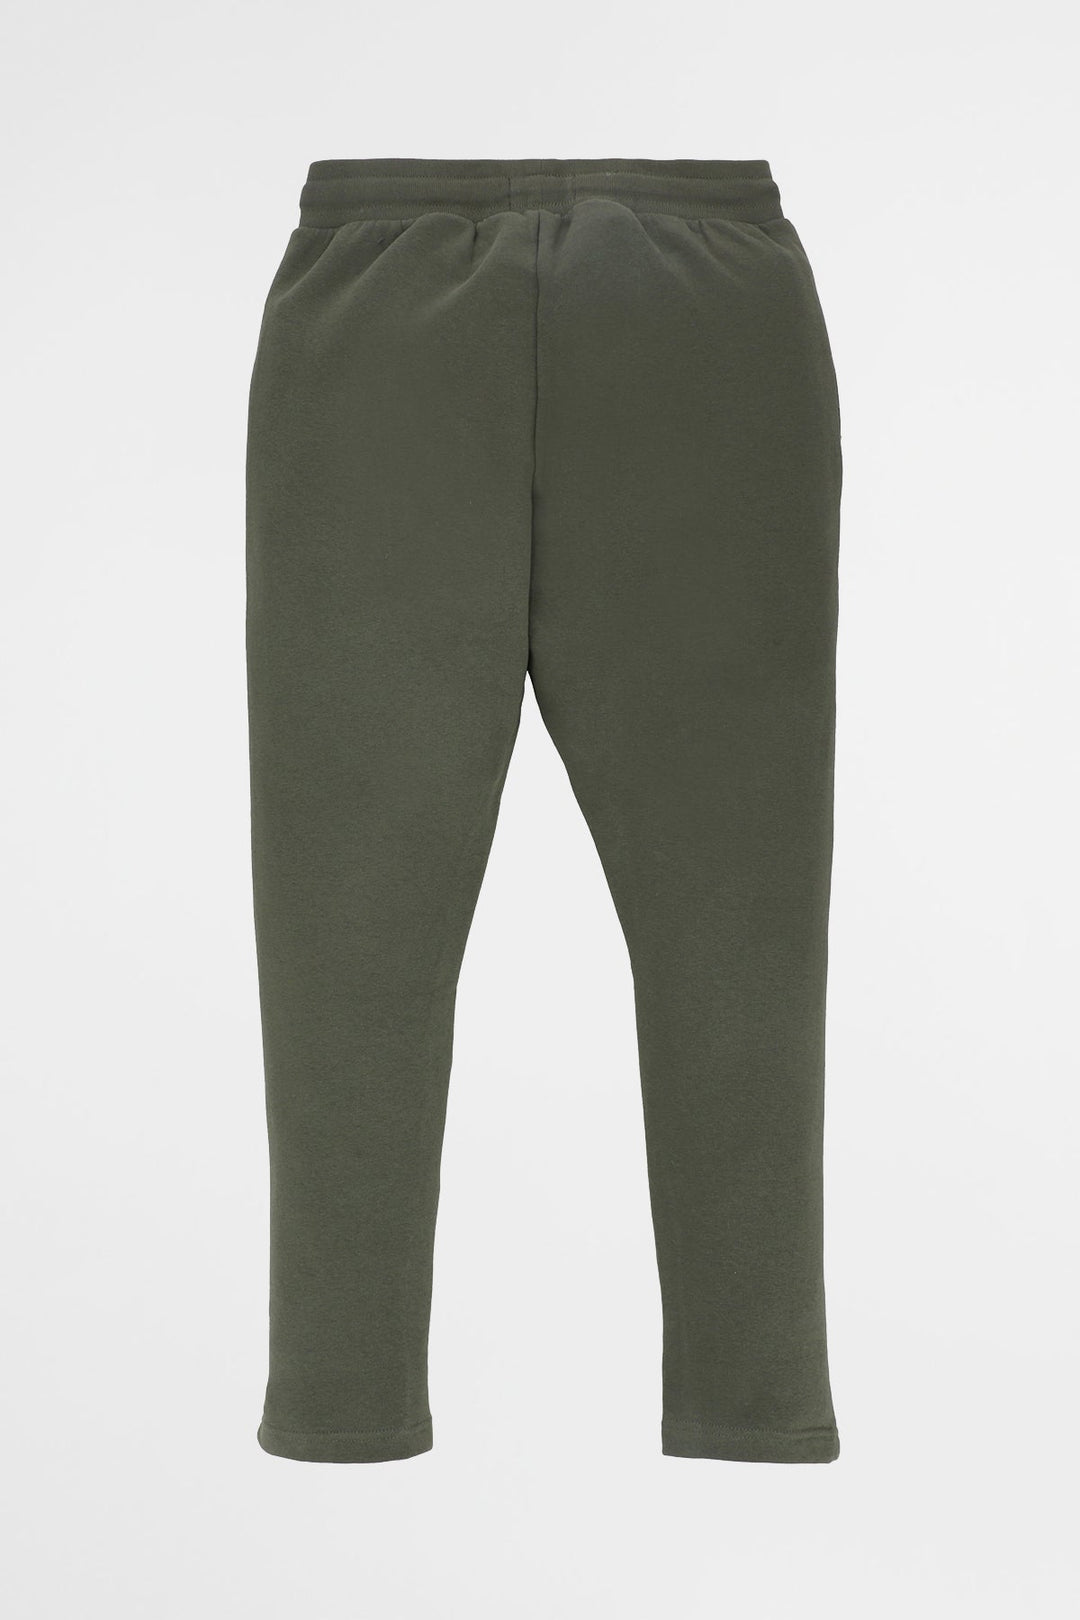 Moss Green Trouser